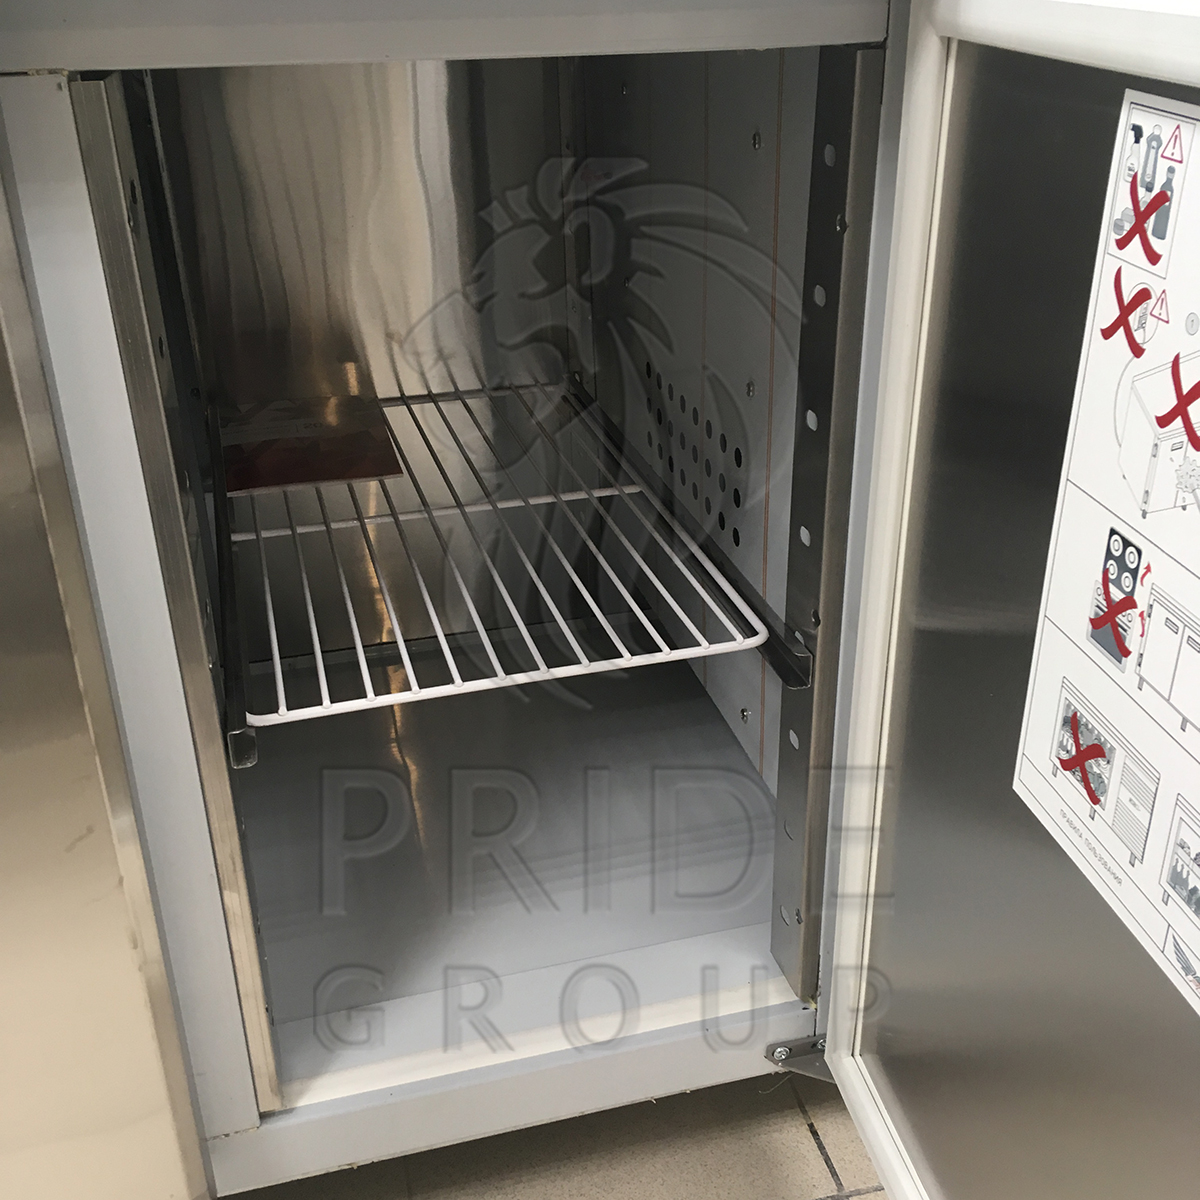 Стол холодильный Finist УХС-600-1/4 универсальный 1810х600х850 мм